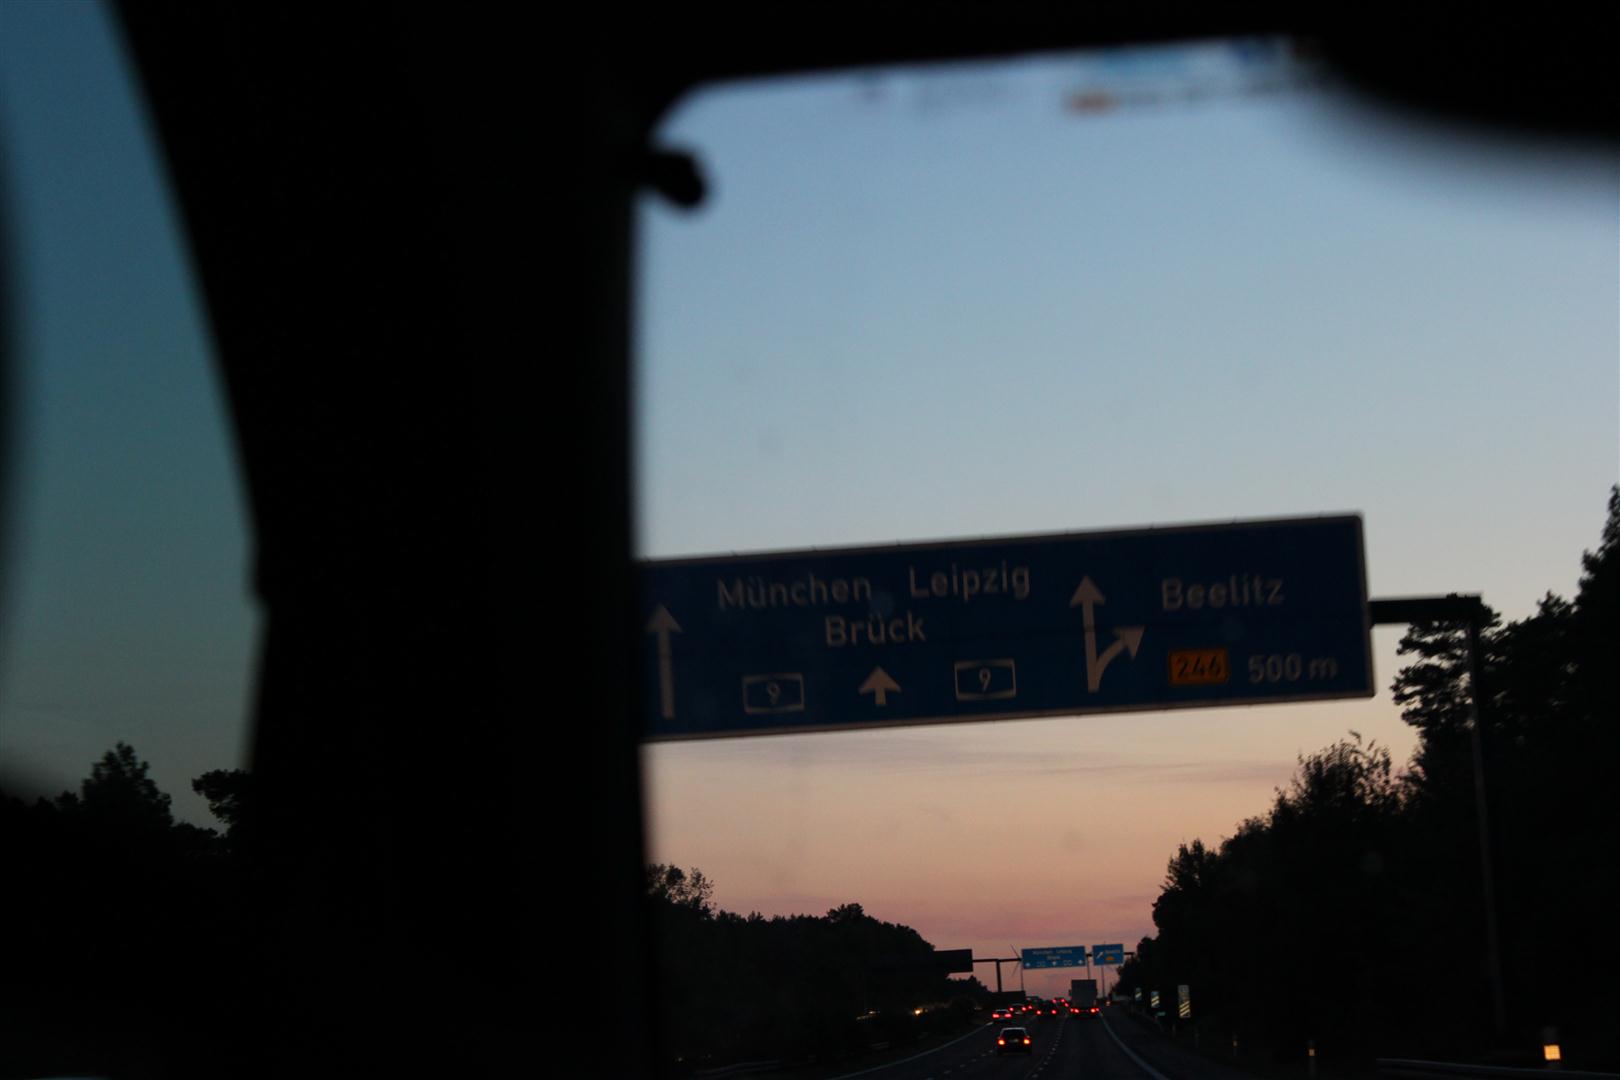 Sonnenuntergang in Richtung München